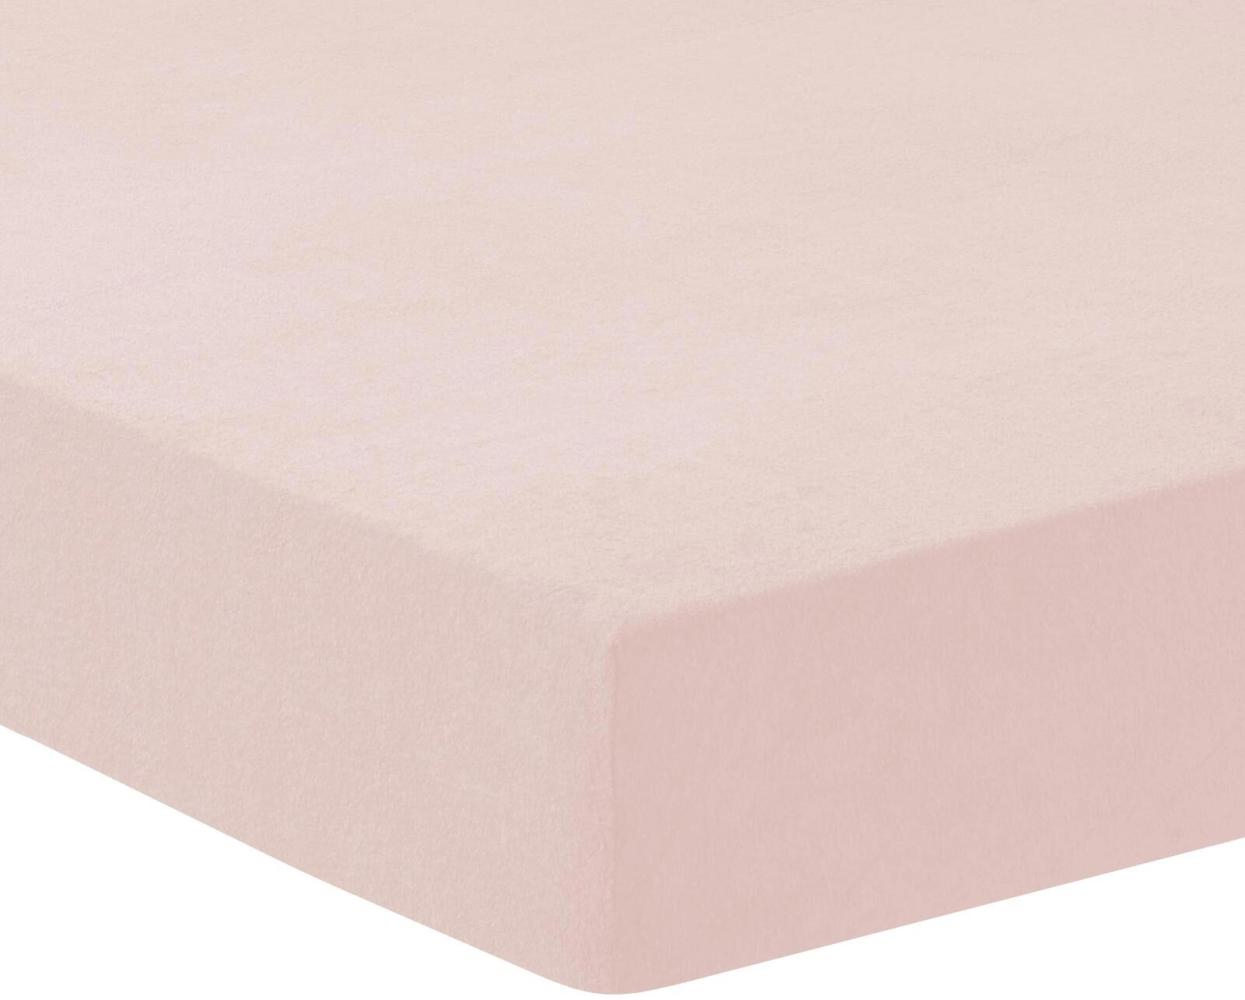 Traumschlaf Spannbettlaken, Frottee Stretch, rosa, 180 x 200 - 200 x 200 cm Bild 1